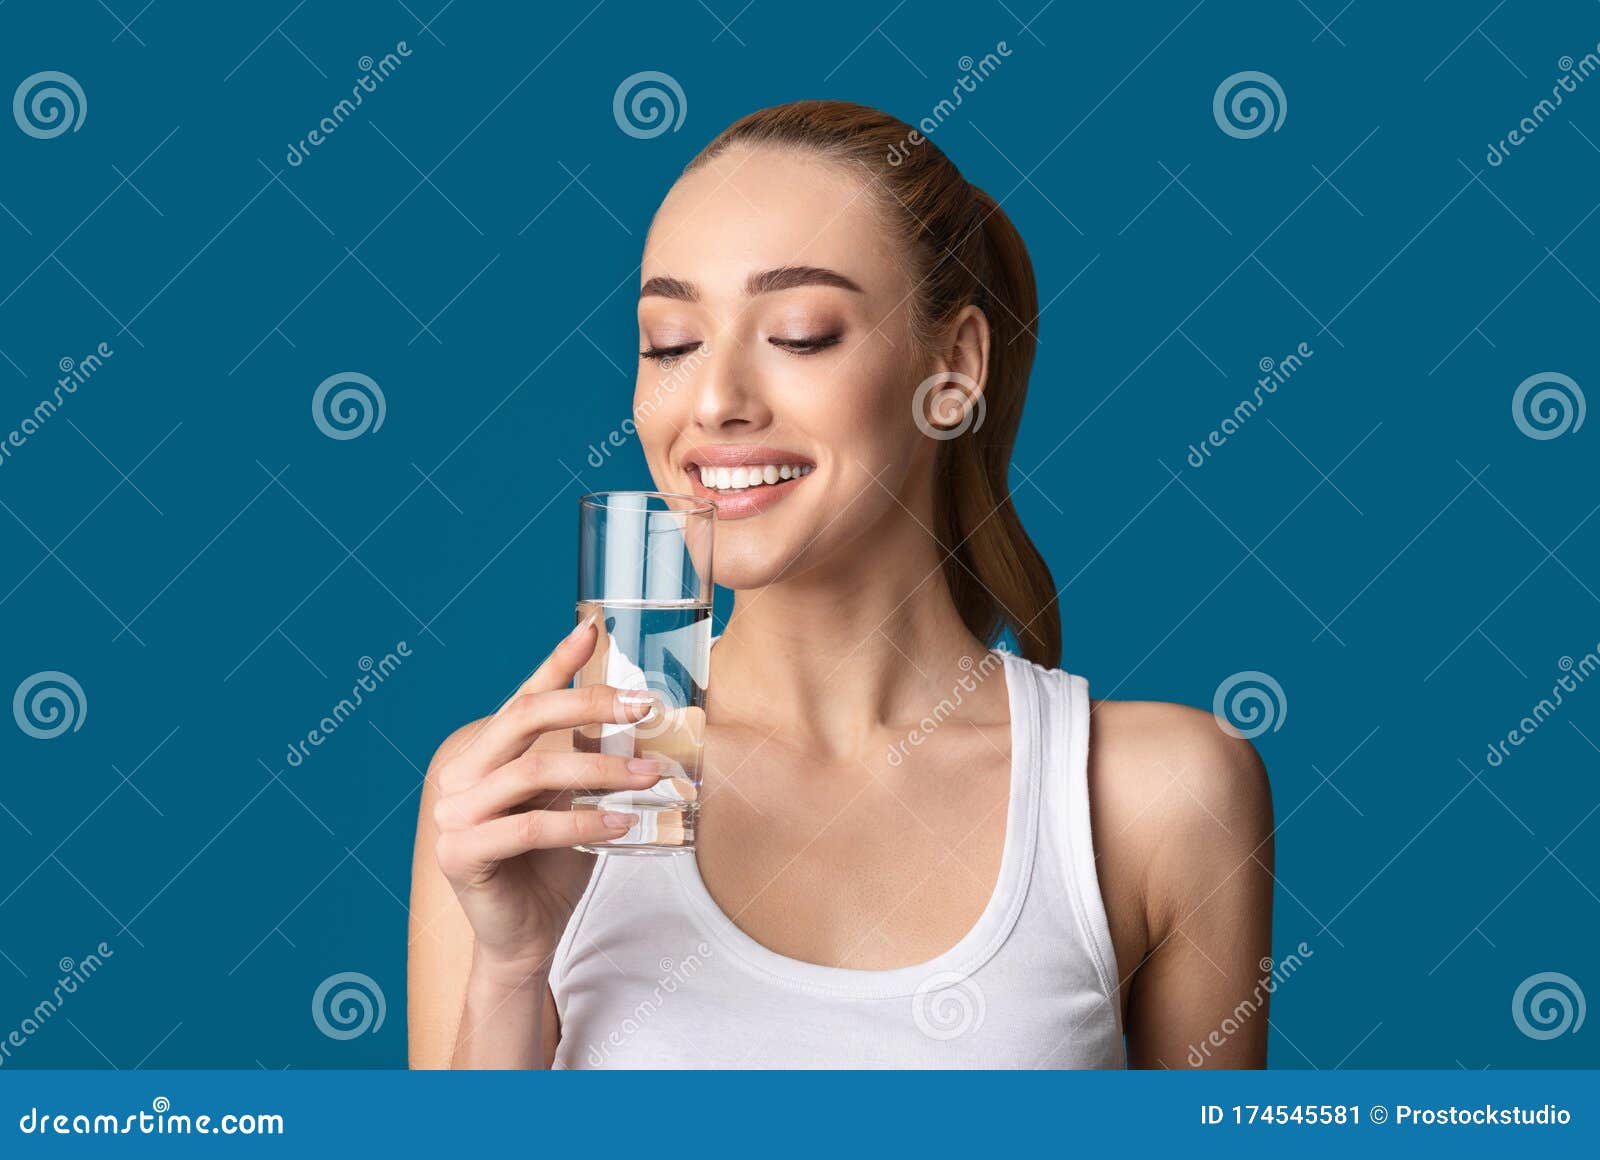 Пить воду стоя или сидя. Пьет воду из стакана. Девушка со стаканом воды. Пить воду стоя. Счастливая девушка с стаканом воды.